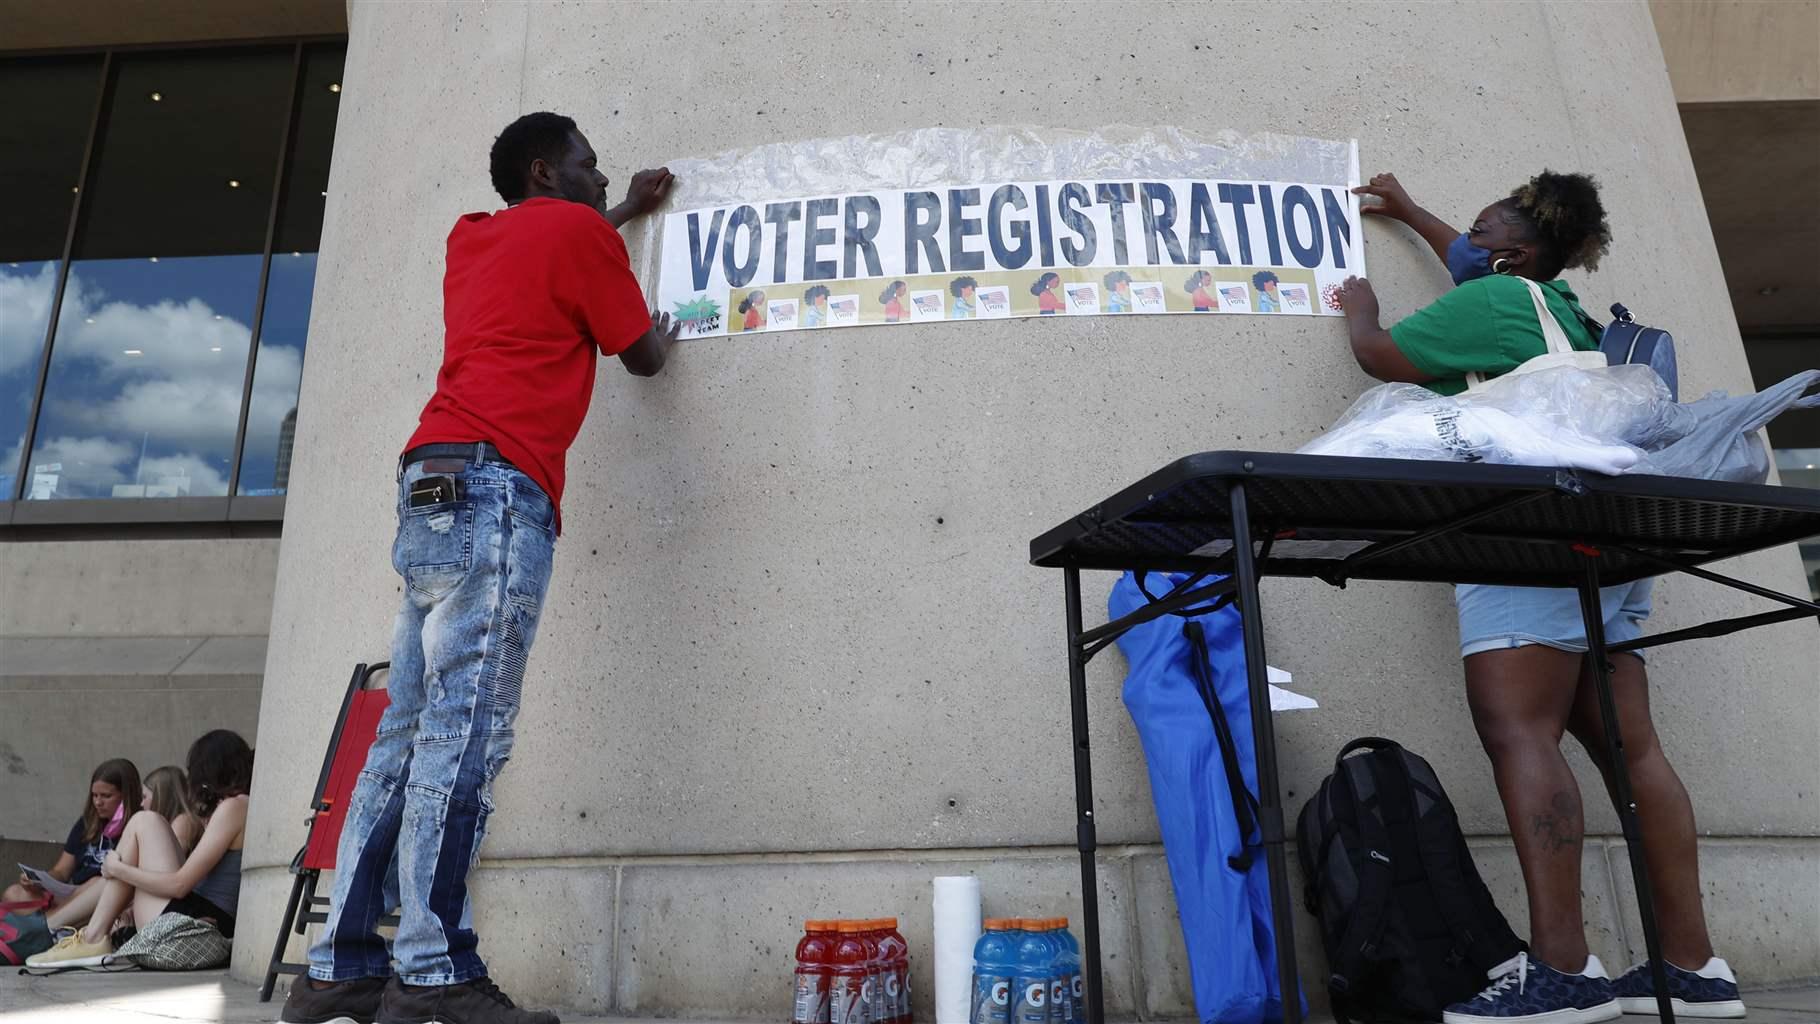 Voter registration volunteers